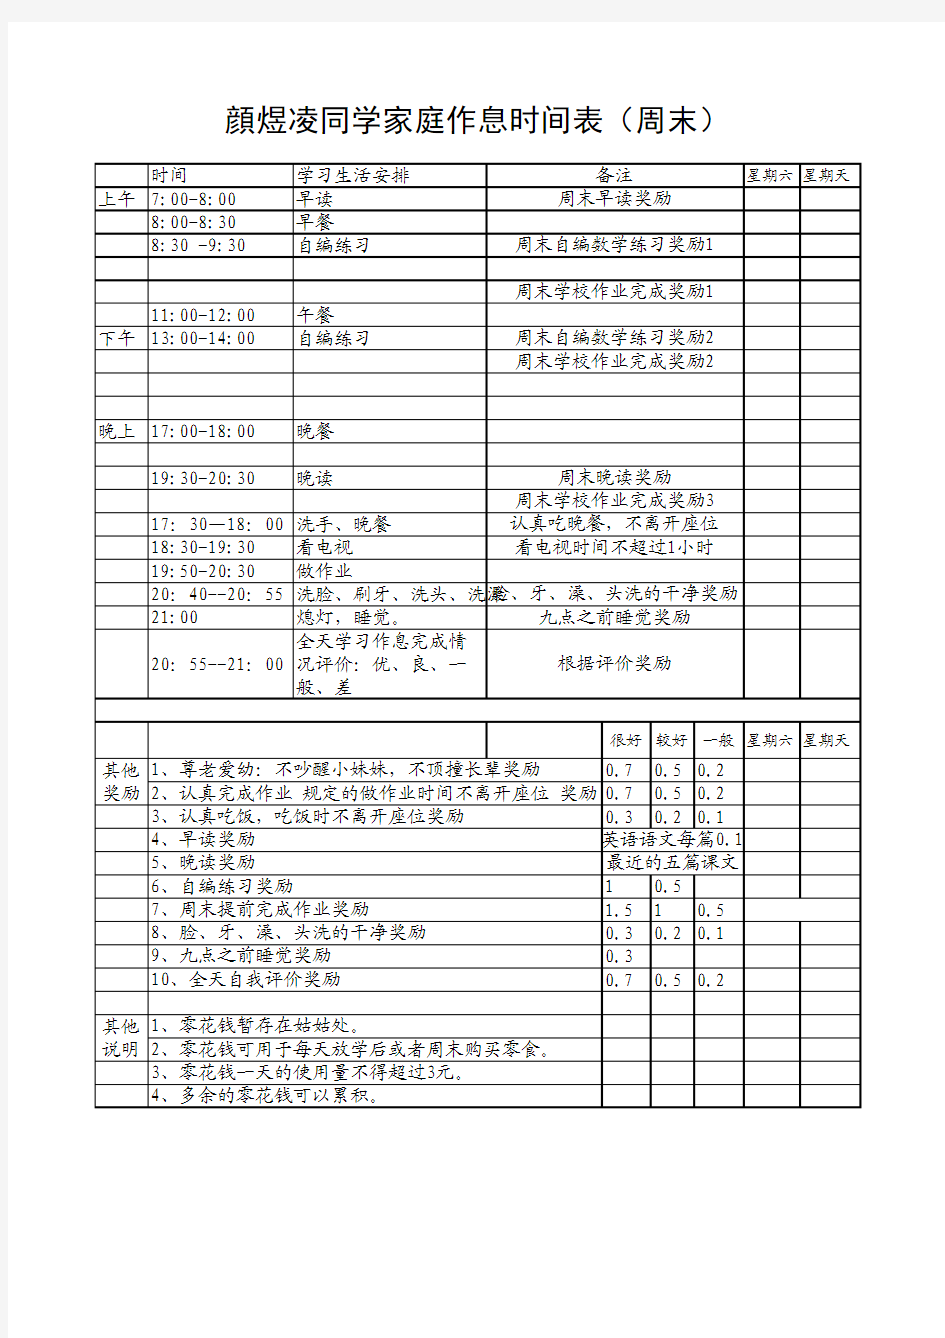 小学生颜煜凌习惯养成作息时间表(周末)(A4直接打印)